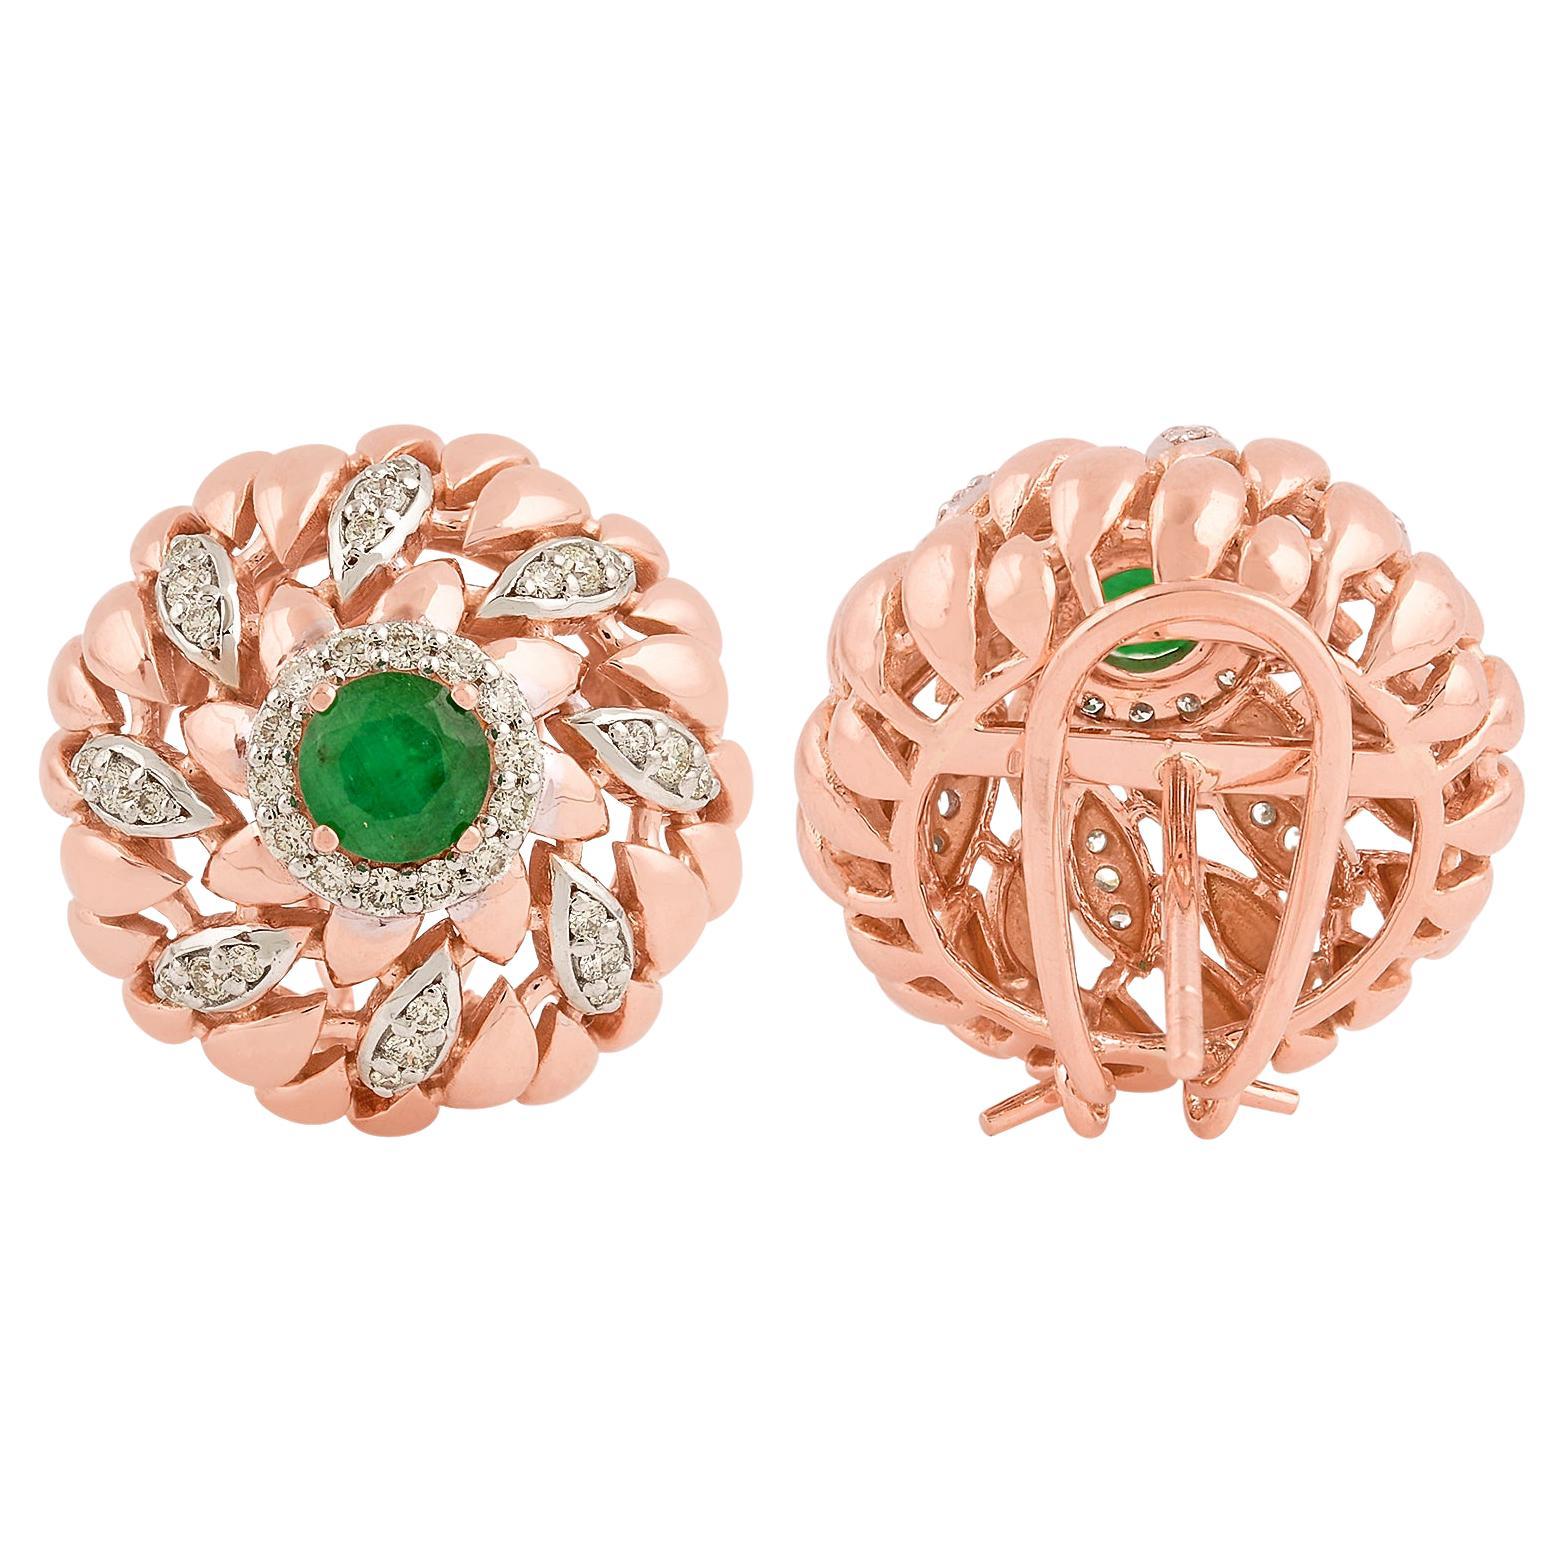 Boucles d'oreilles en or rose 18 carats avec pavage de diamants et pierres précieuses en émeraude naturelle